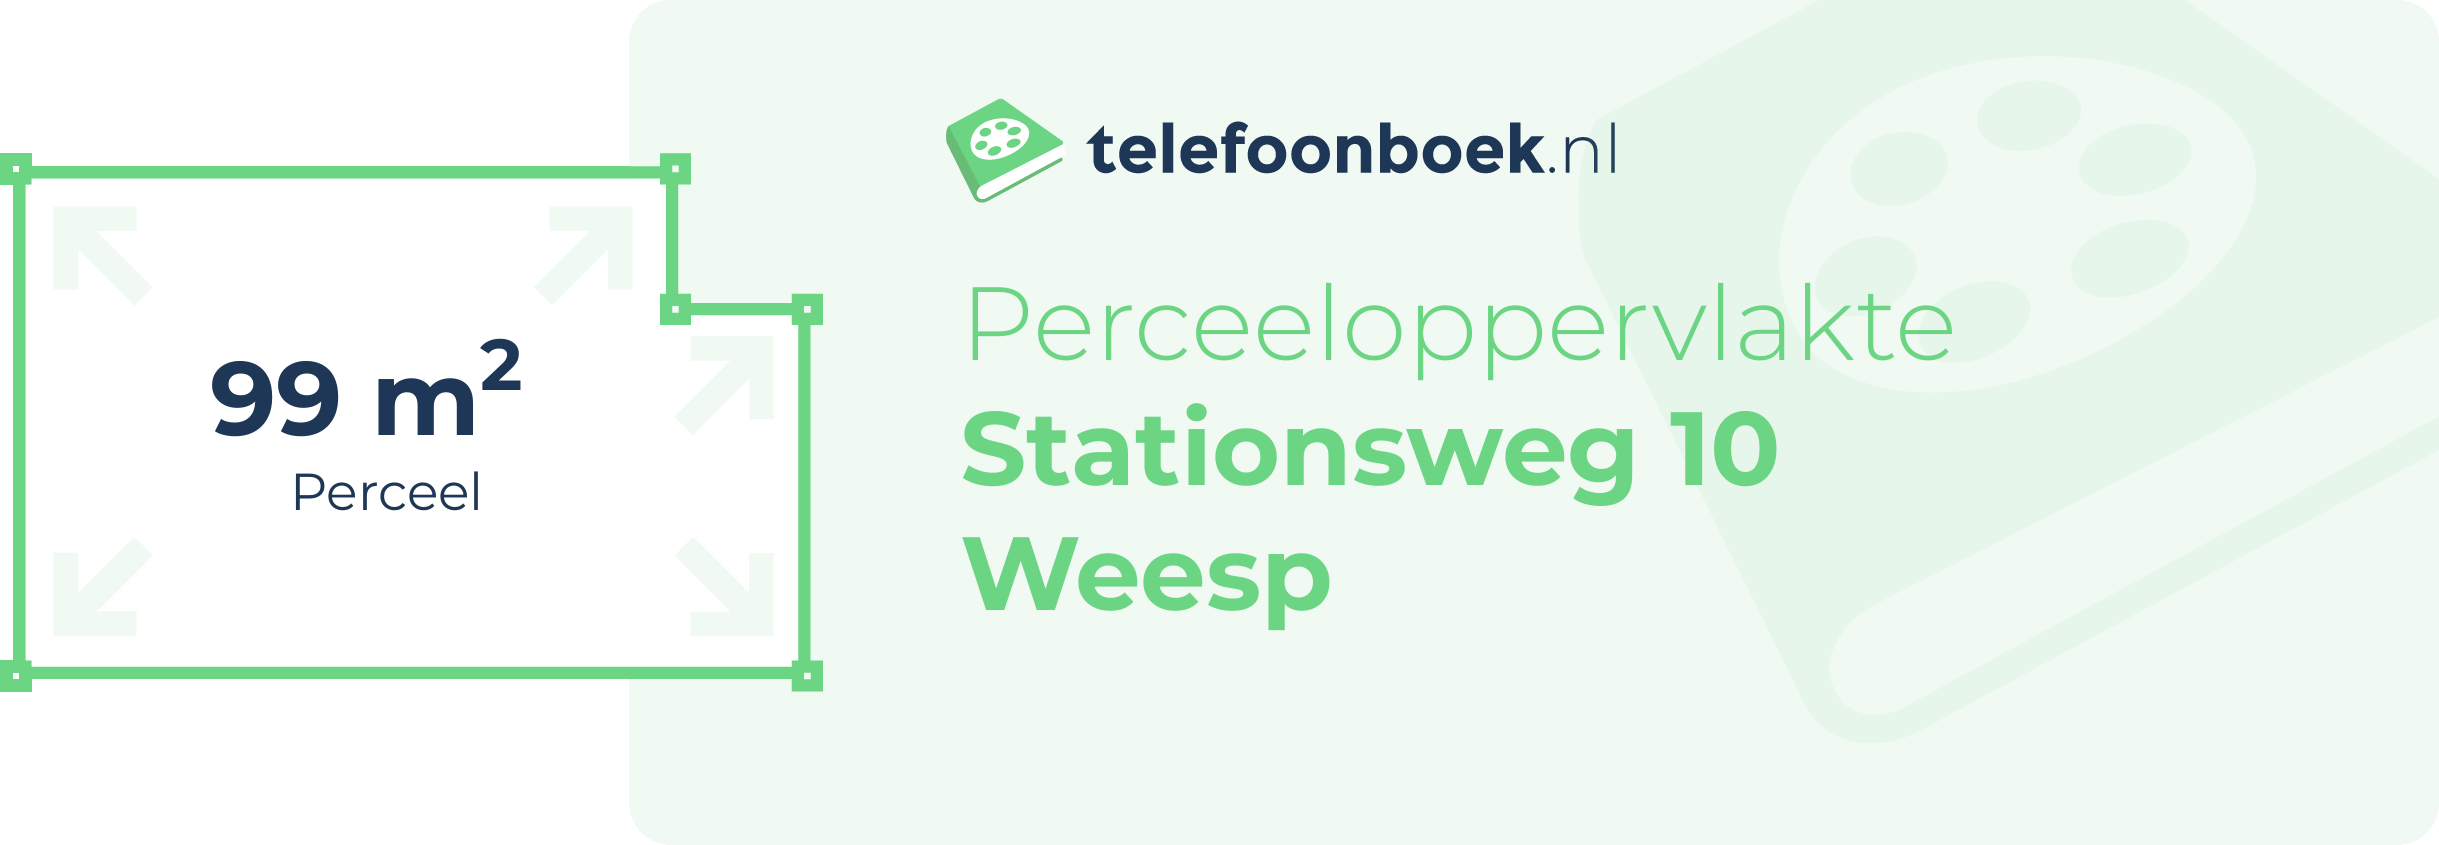 Perceeloppervlakte Stationsweg 10 Weesp